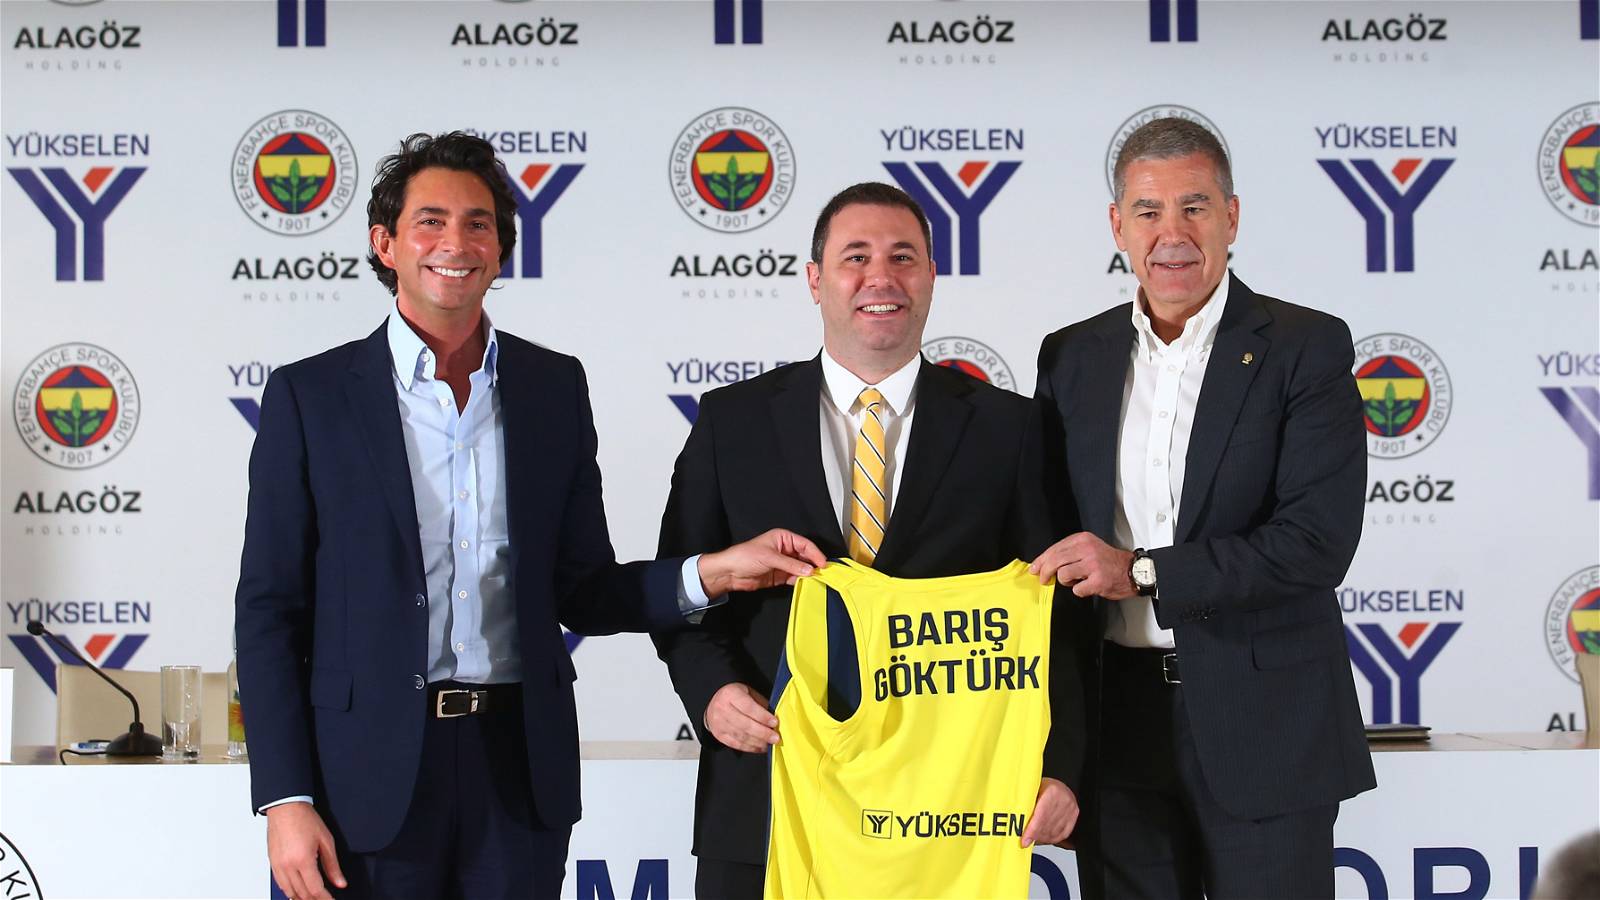 Fenerbahçe - Yükselen Çelik sponsorluk anlaşması yenilendi